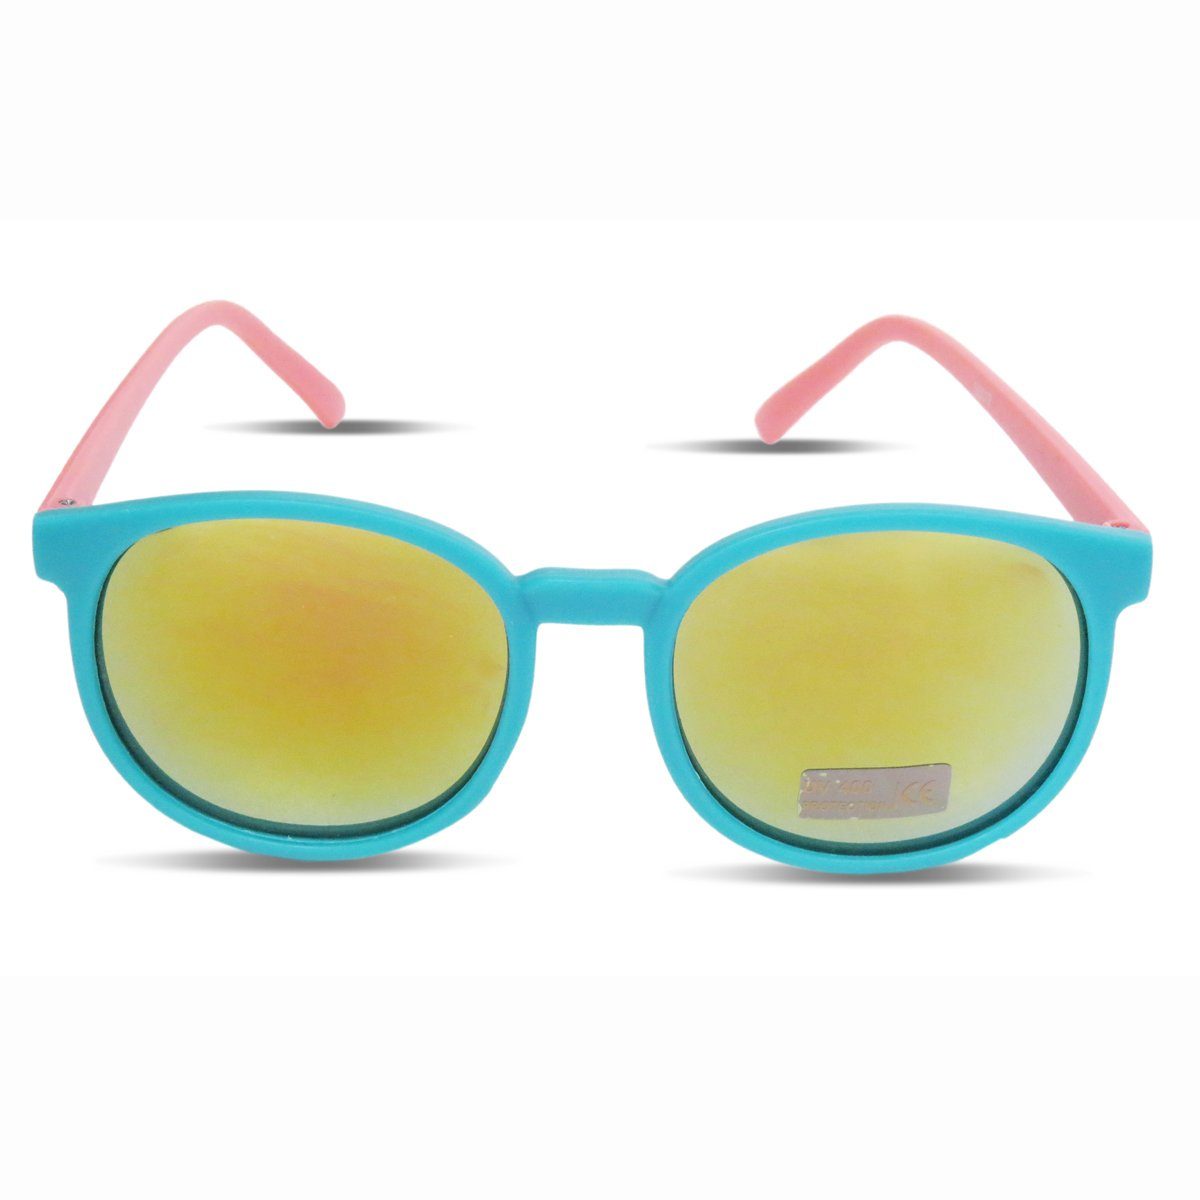 Sonnenbrille tuerkis-rosa Sommer Sonnenbrille Onesize Sonia Verspiegelt Partybrille Originelli Trend